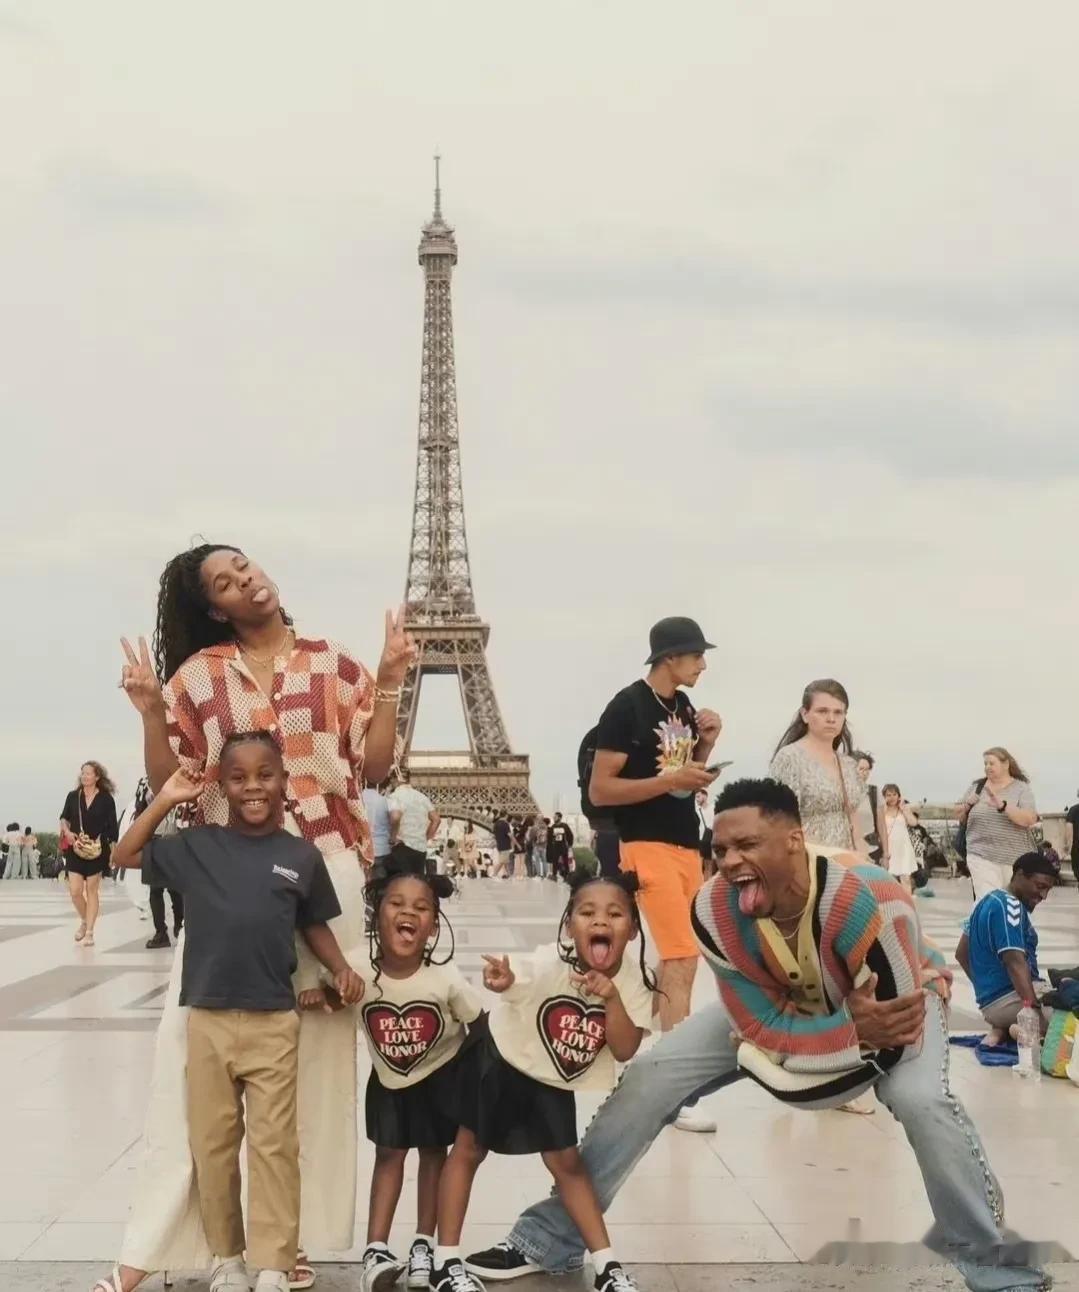 威少:合同什么的先放一边吧，还是陪陪家人最重要！！
威少和家人在巴黎拍的照片！
